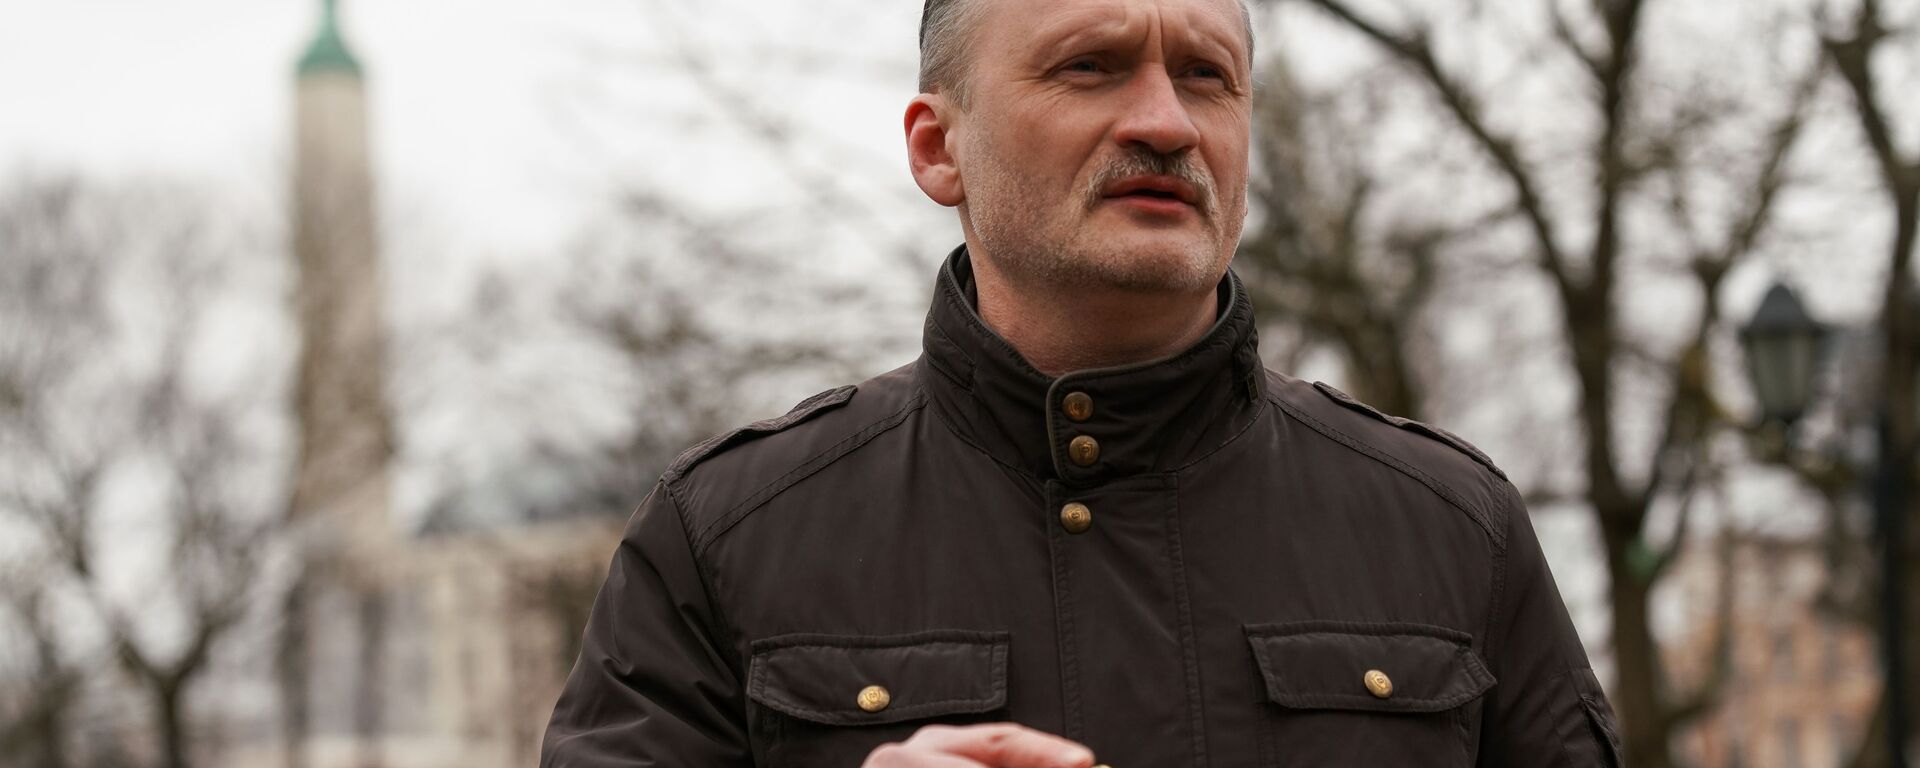 Сопредседатель РСЛ Мирослав Митрофанов (в центре) возле памятника Свободы в Риге 16 марта 2020 года - Sputnik Latvija, 1920, 14.03.2021